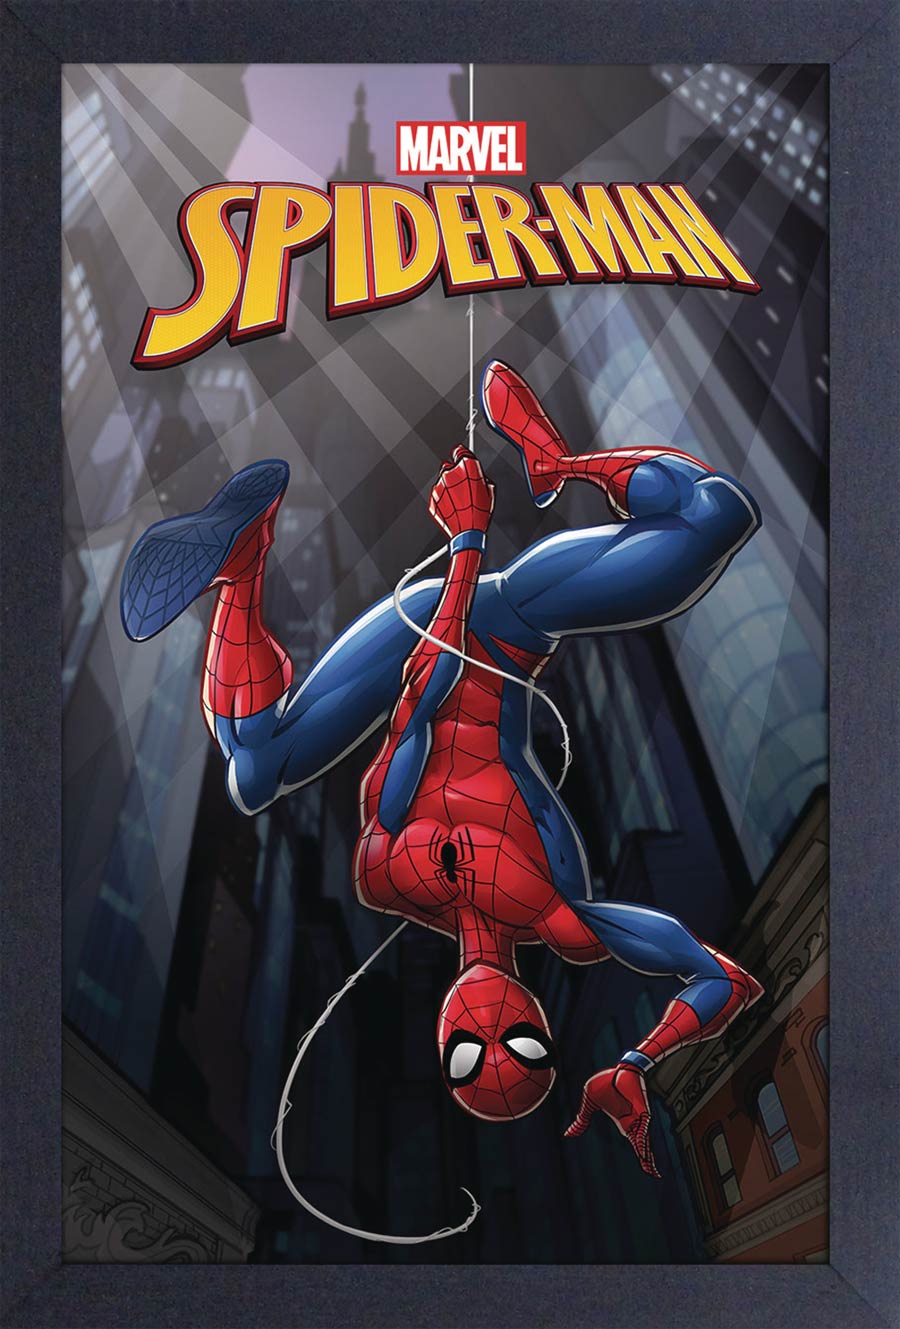 Marvel 11x17 Framed Print - Spider-Man Hanging